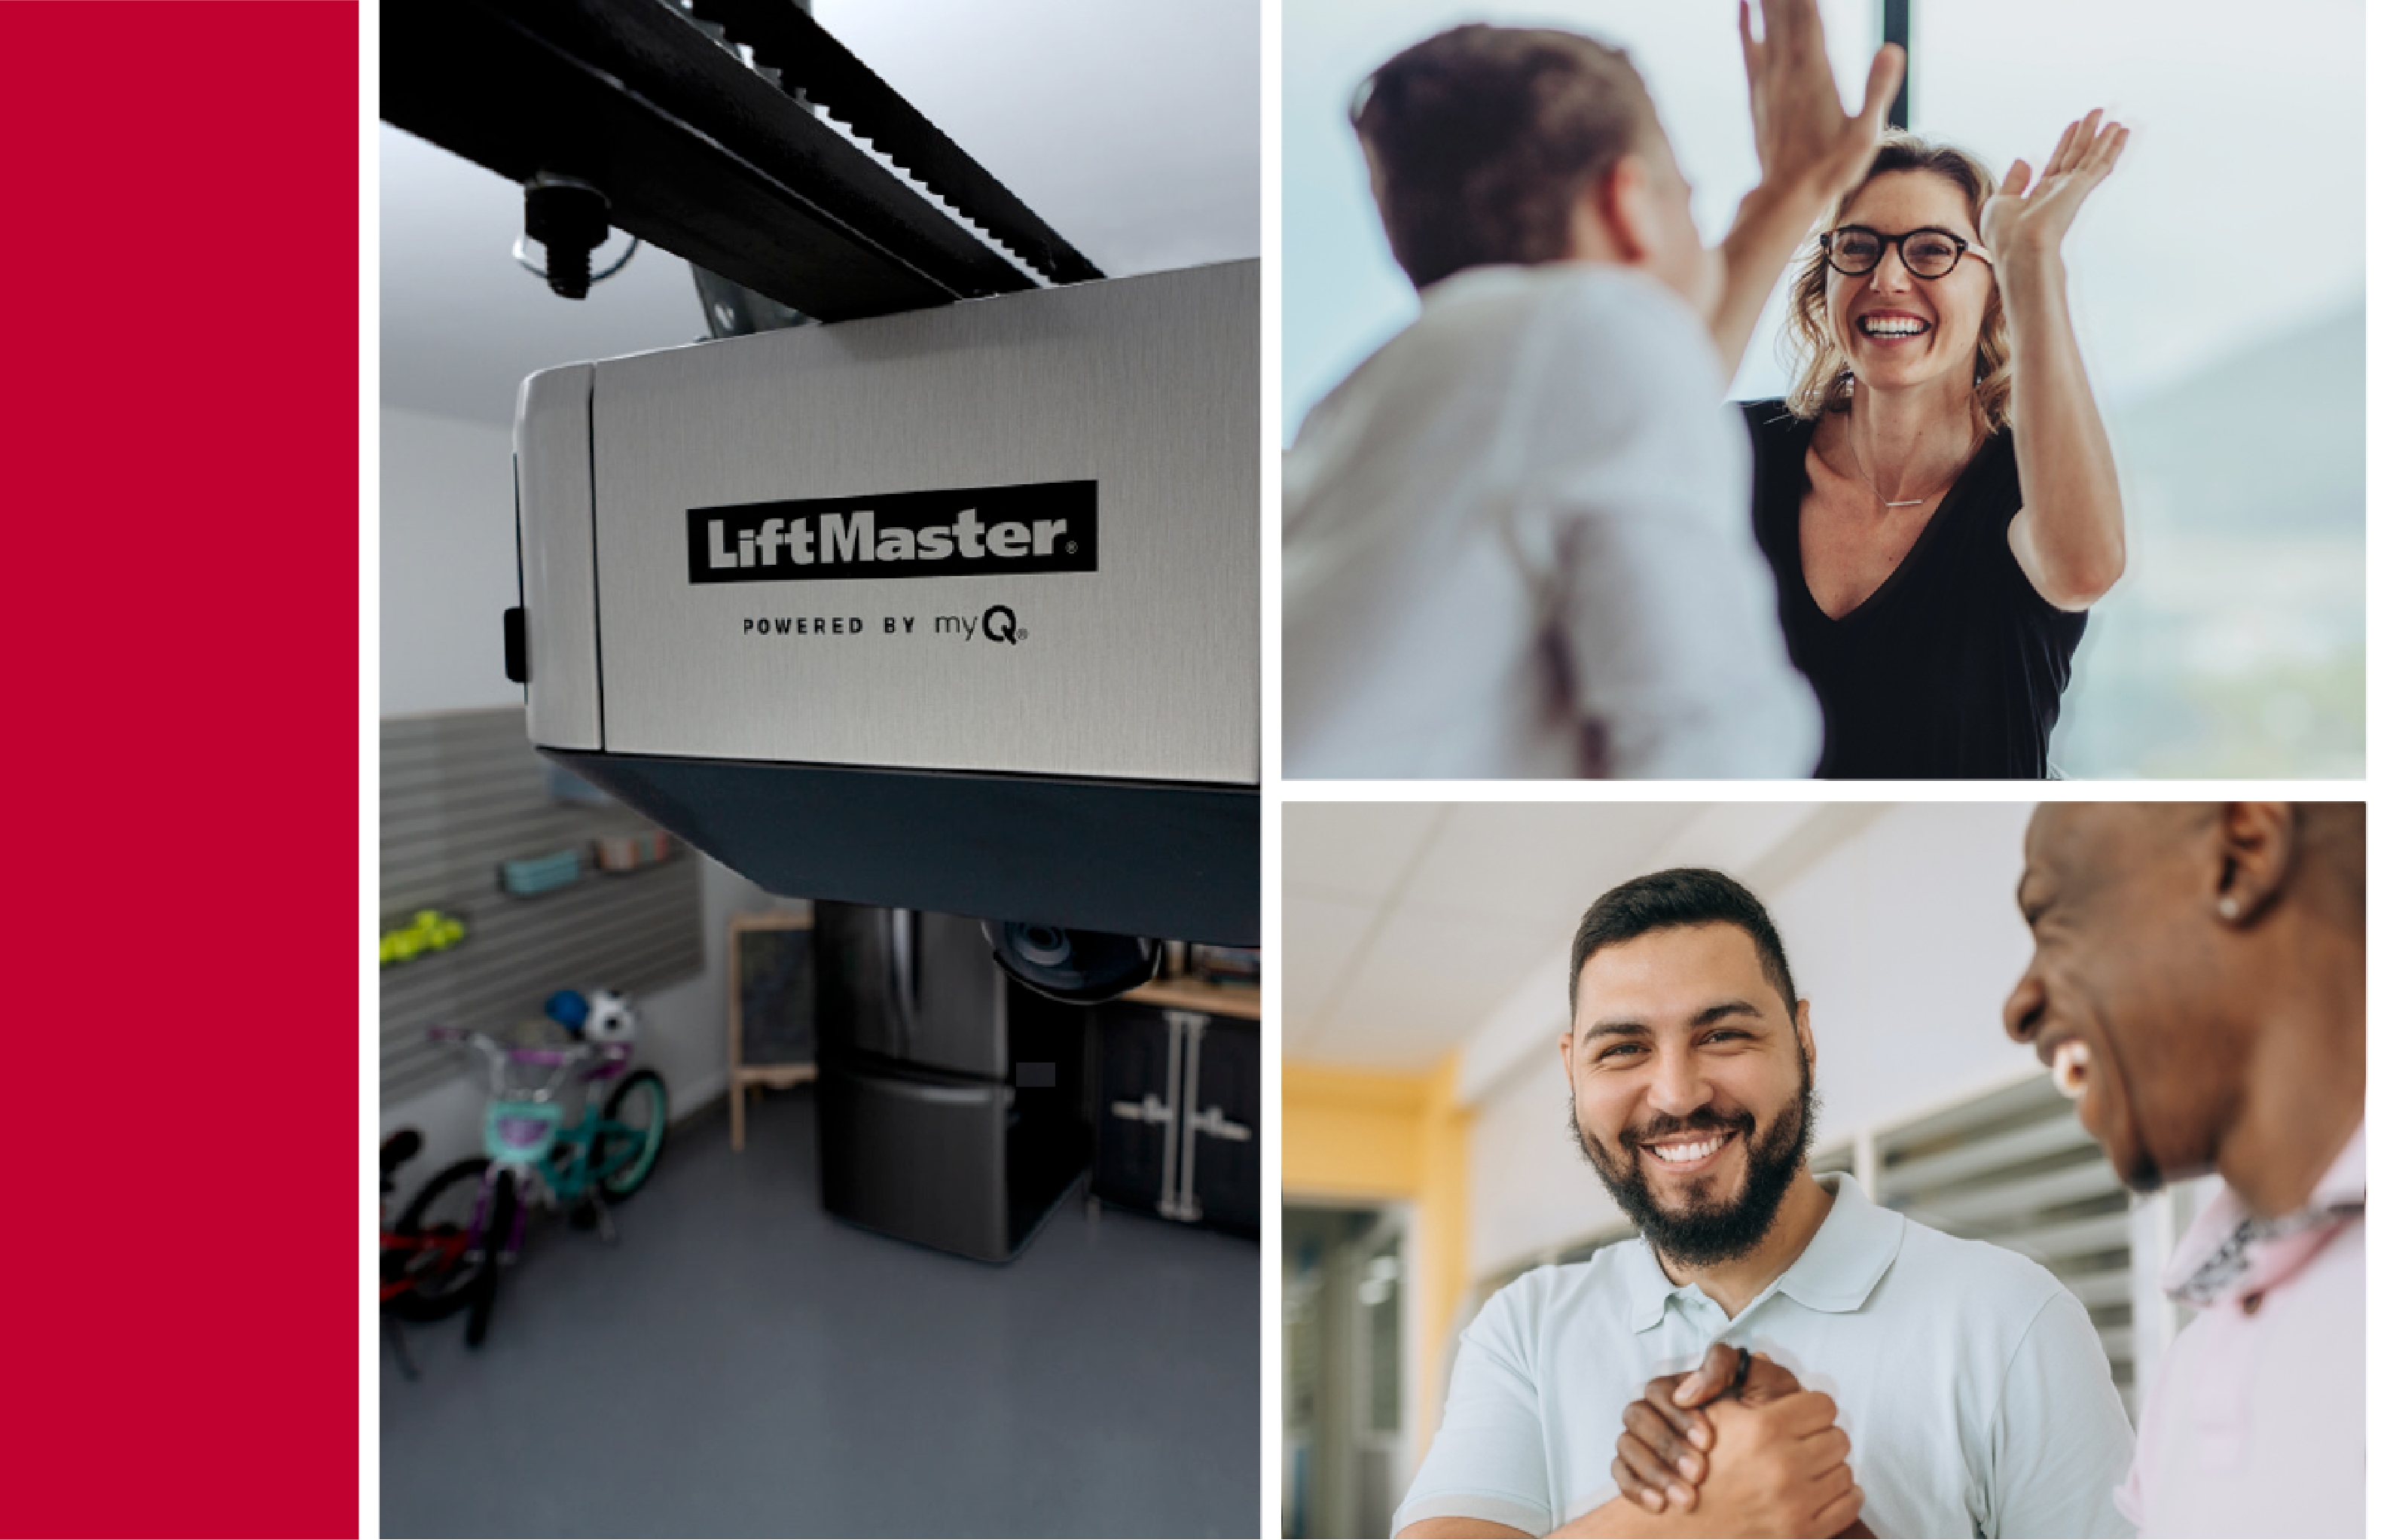 LiftMaster Partner
Rewards Program